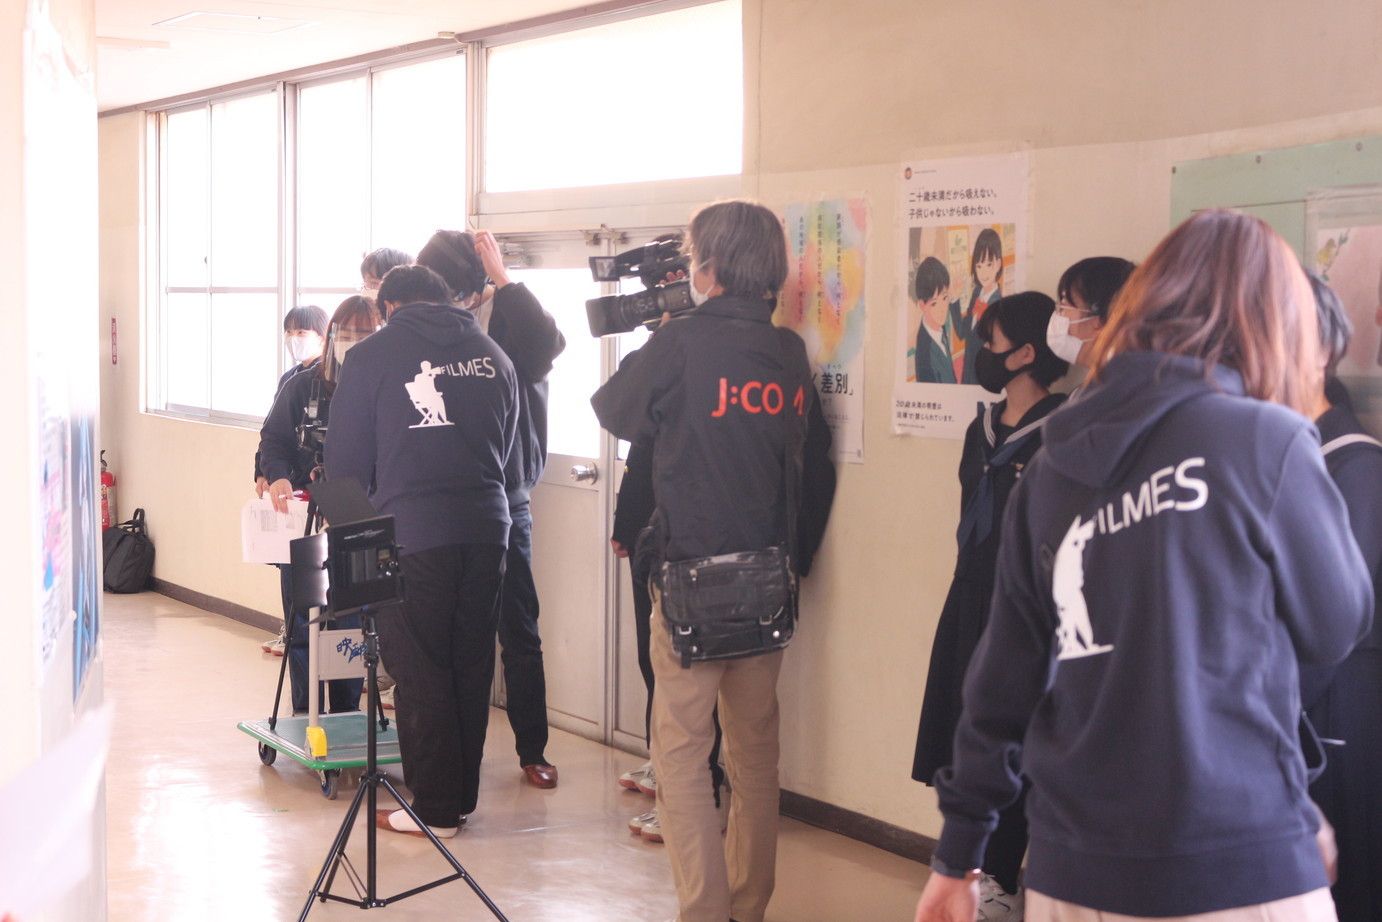 コロナ禍でも活発に団体活動を行う秘訣とは？ 中学校のプロモーション動画プロジェクトを成功させた「武蔵大学 映画研究会」にインタビュー！